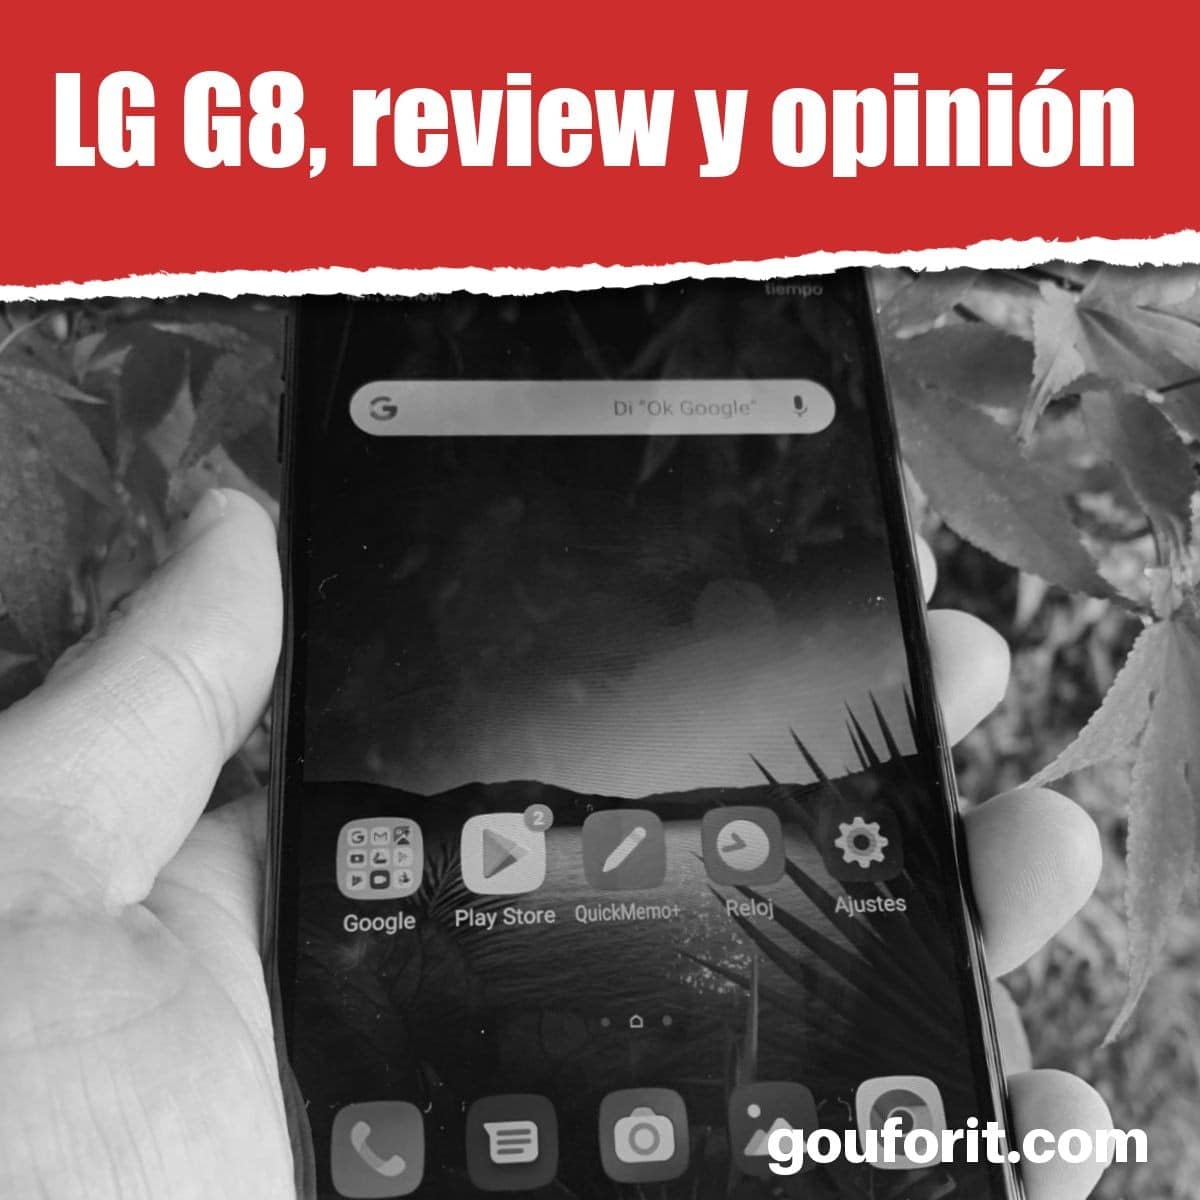 LG G8, review y opinión